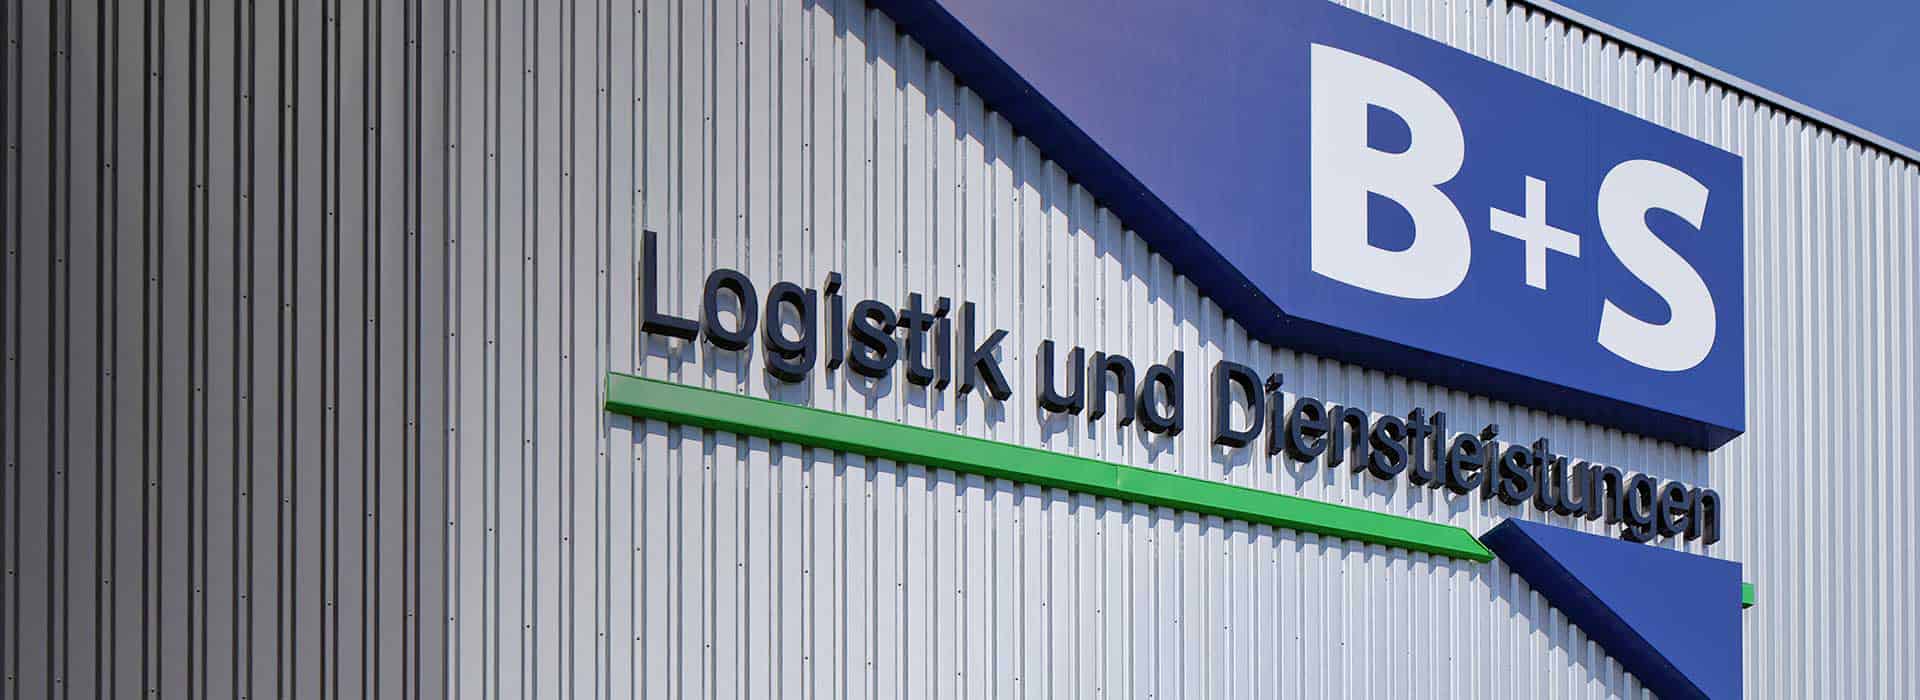 B+S ist mit zehn Standorten in ganz Deutschland vertreten - Hauptsitz des Logistikdienstleisters: Borgholzhausen.